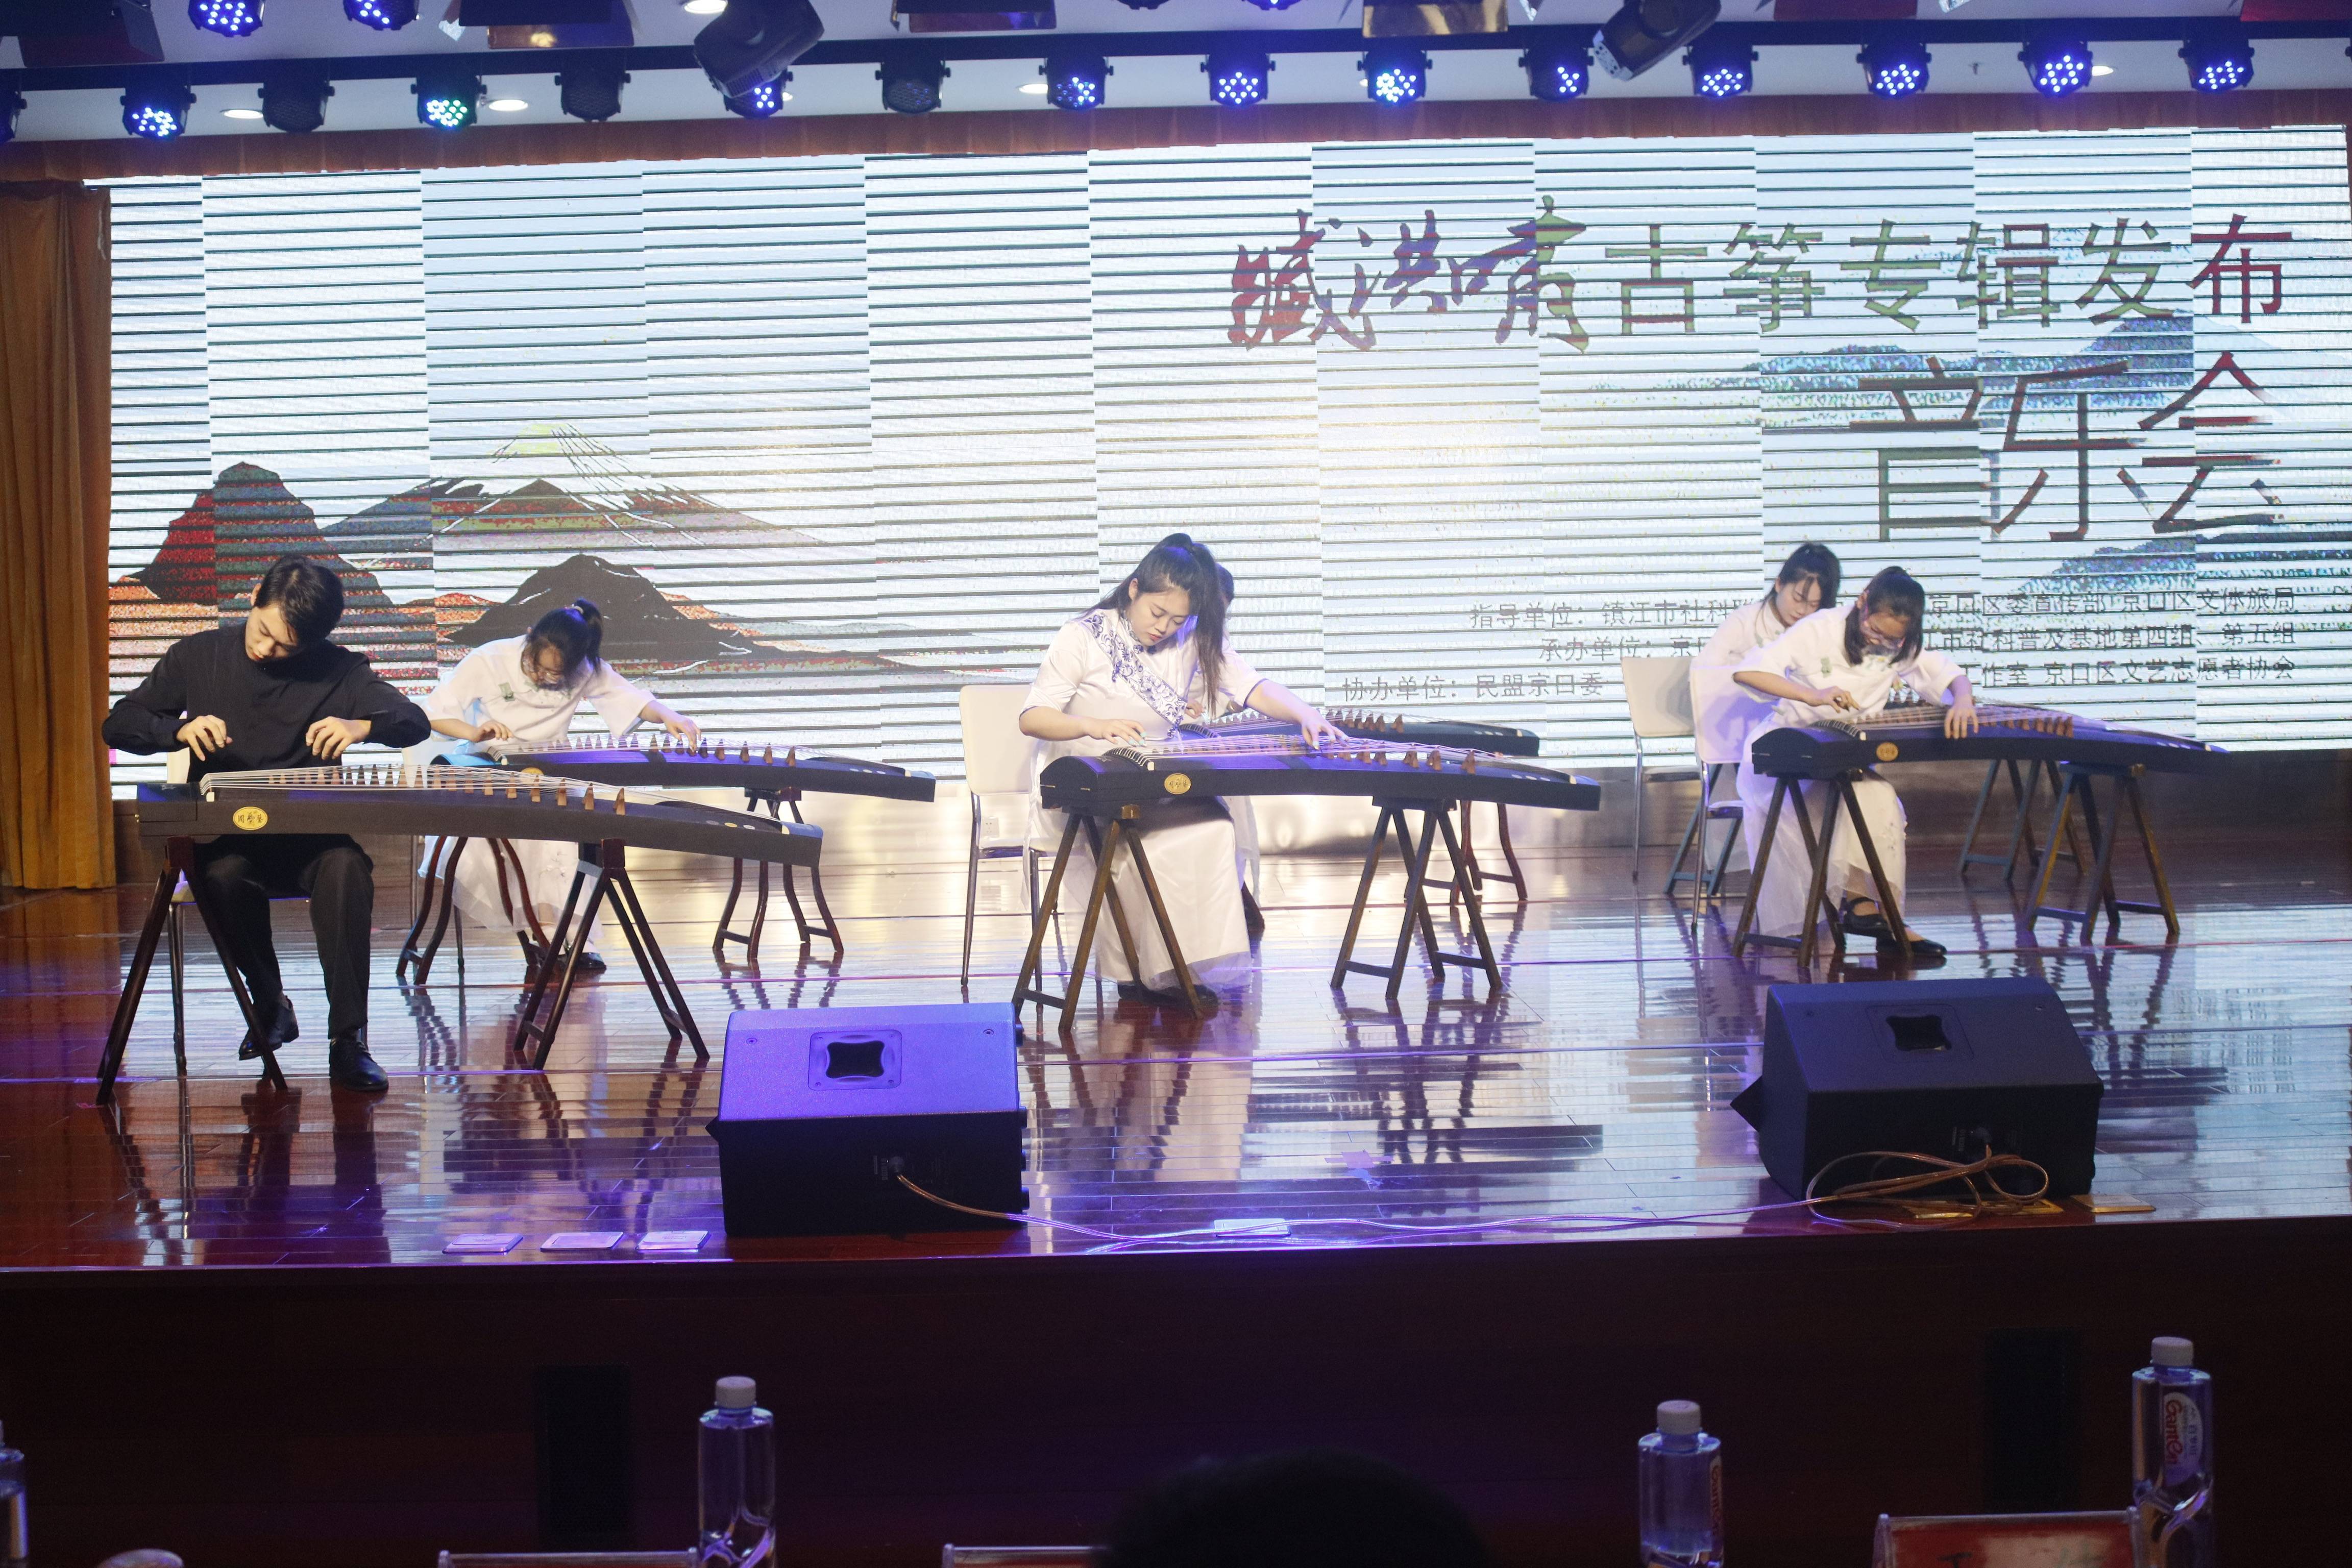 臧洪啸个人古筝独奏专辑《童筝少年》发布音乐会在京口举行 